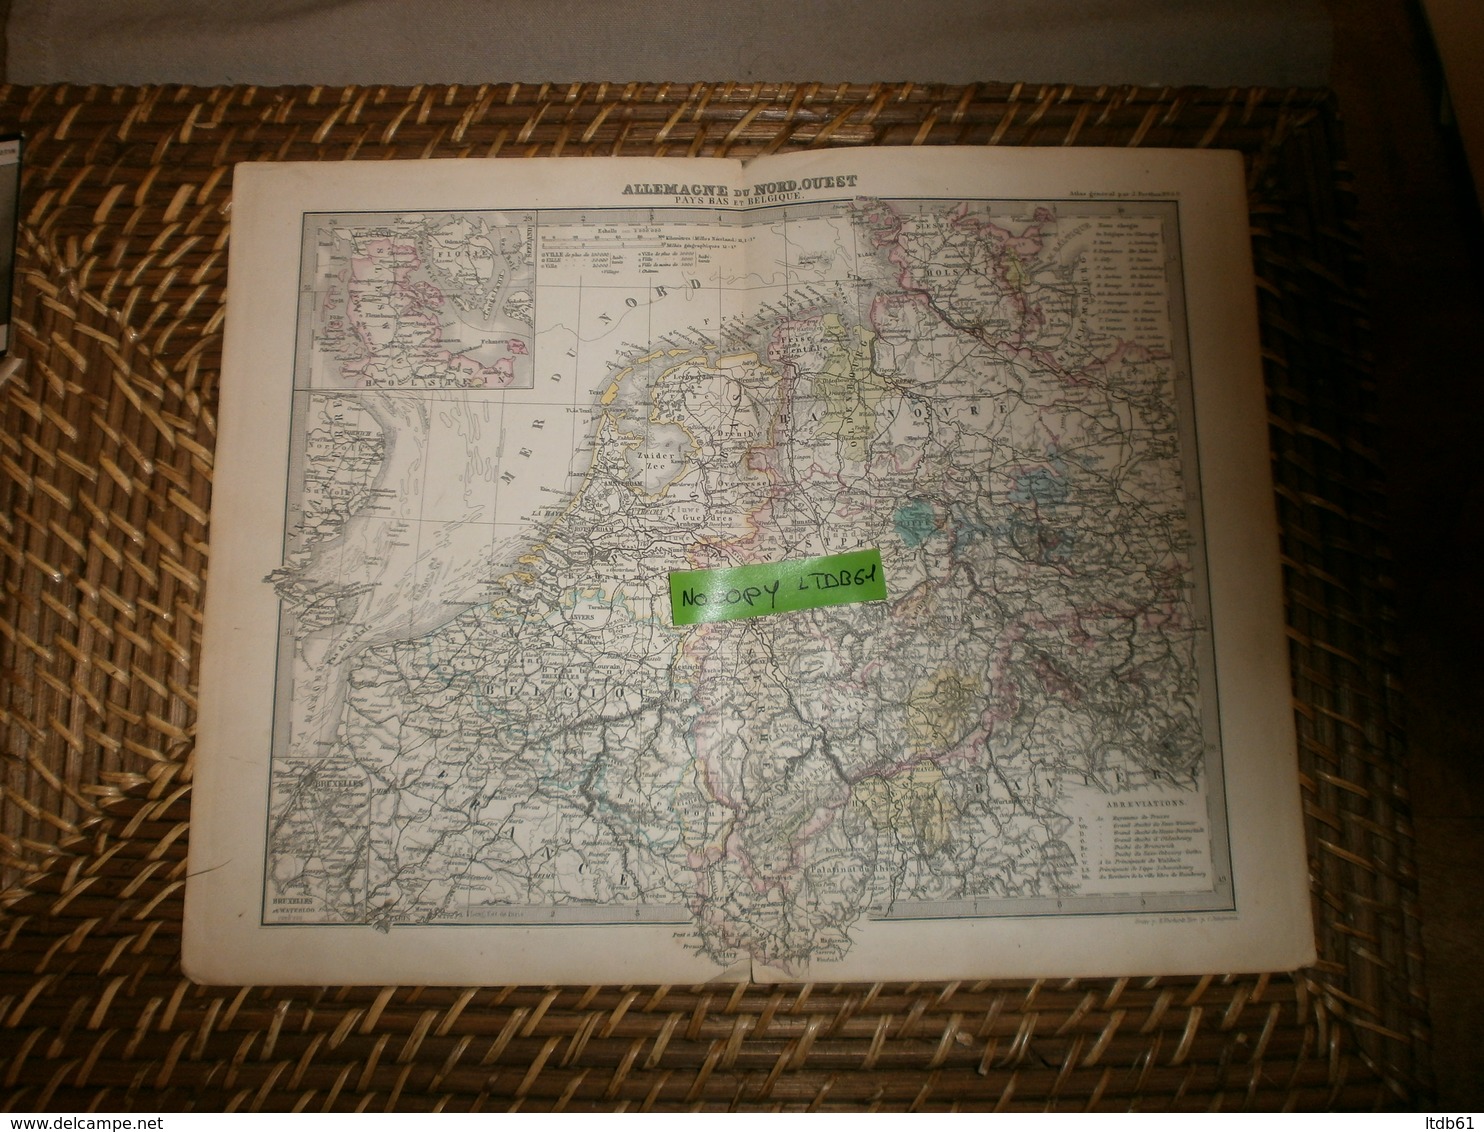 Cartes Cartes Géographiques De Justus Perthes 24 X32 Environ Carte Extraite De L'Atlas Général 1882 Allemagne Du N Ouest - Geographical Maps